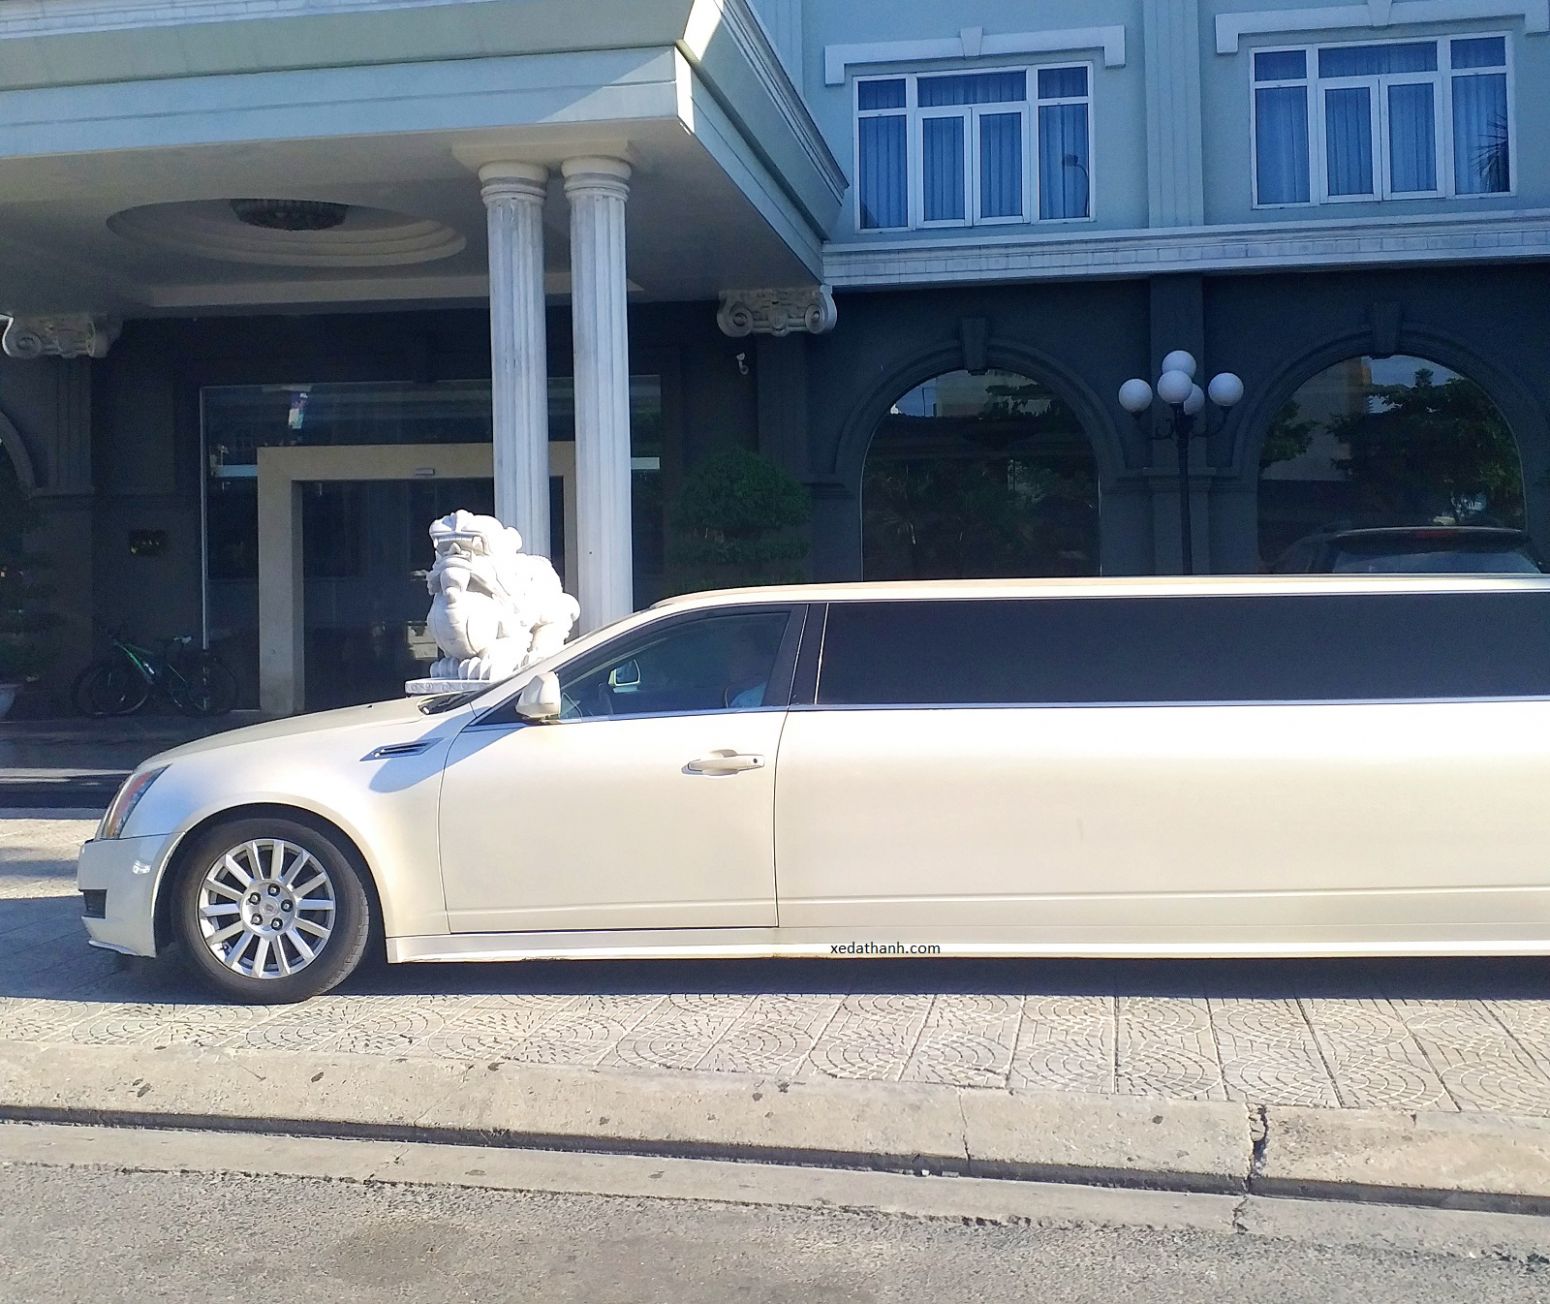 Thuê xe Limousine đám cưới với Cadillac 9 chỗ luxury